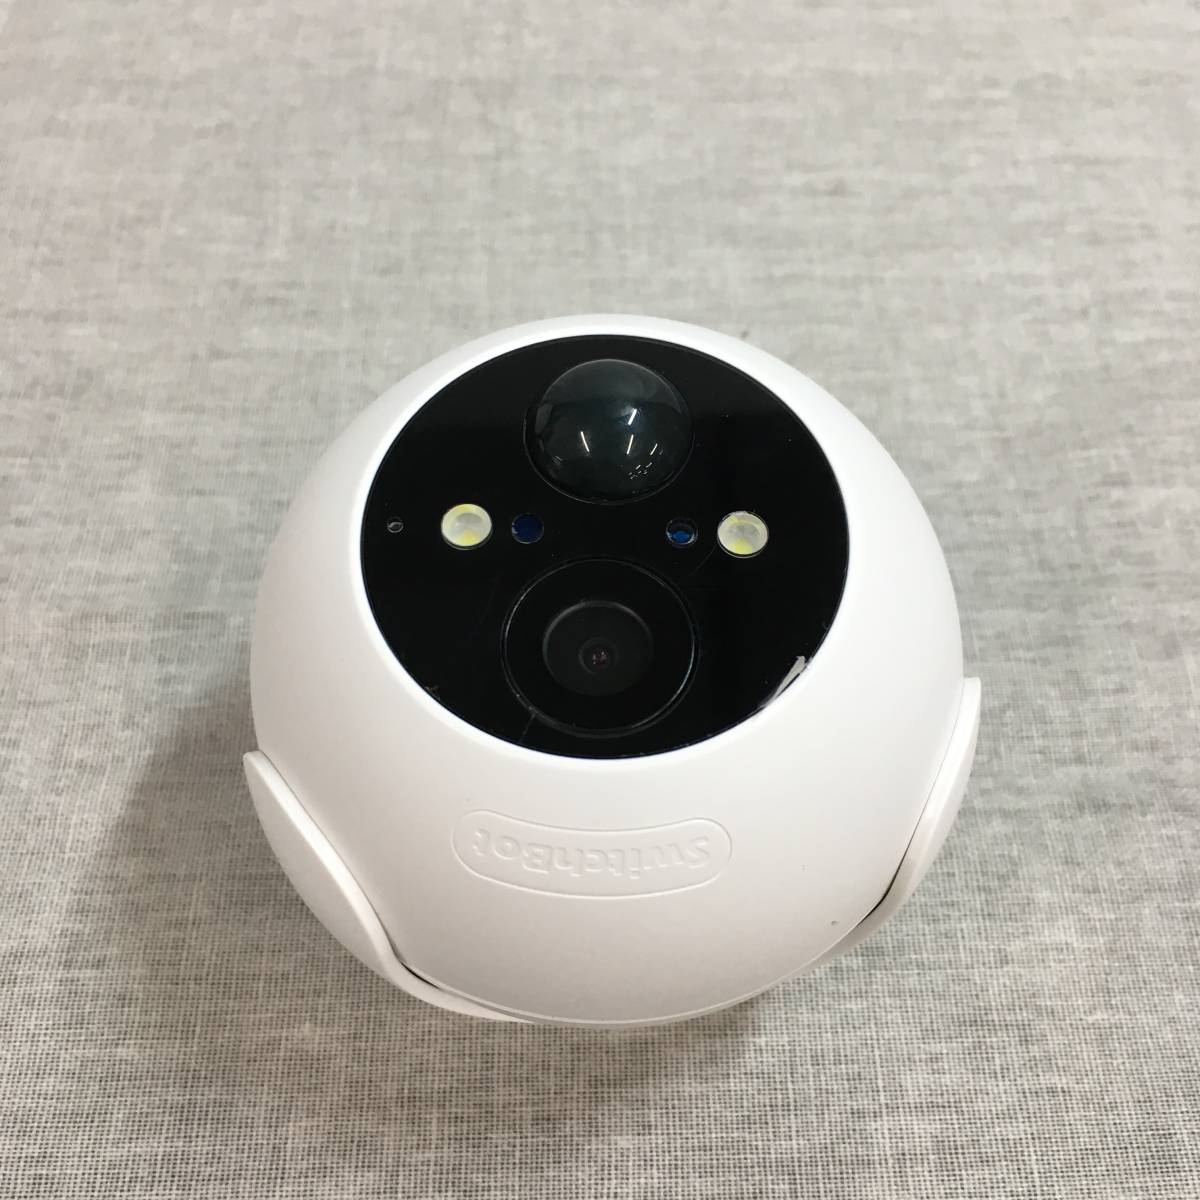 SwitchBot 防犯カメラ スイッチボット 屋外カメラ Alexa - 監視カメラ 電池式 10000mAh 大容量 1080p高画素 W2802000_画像2